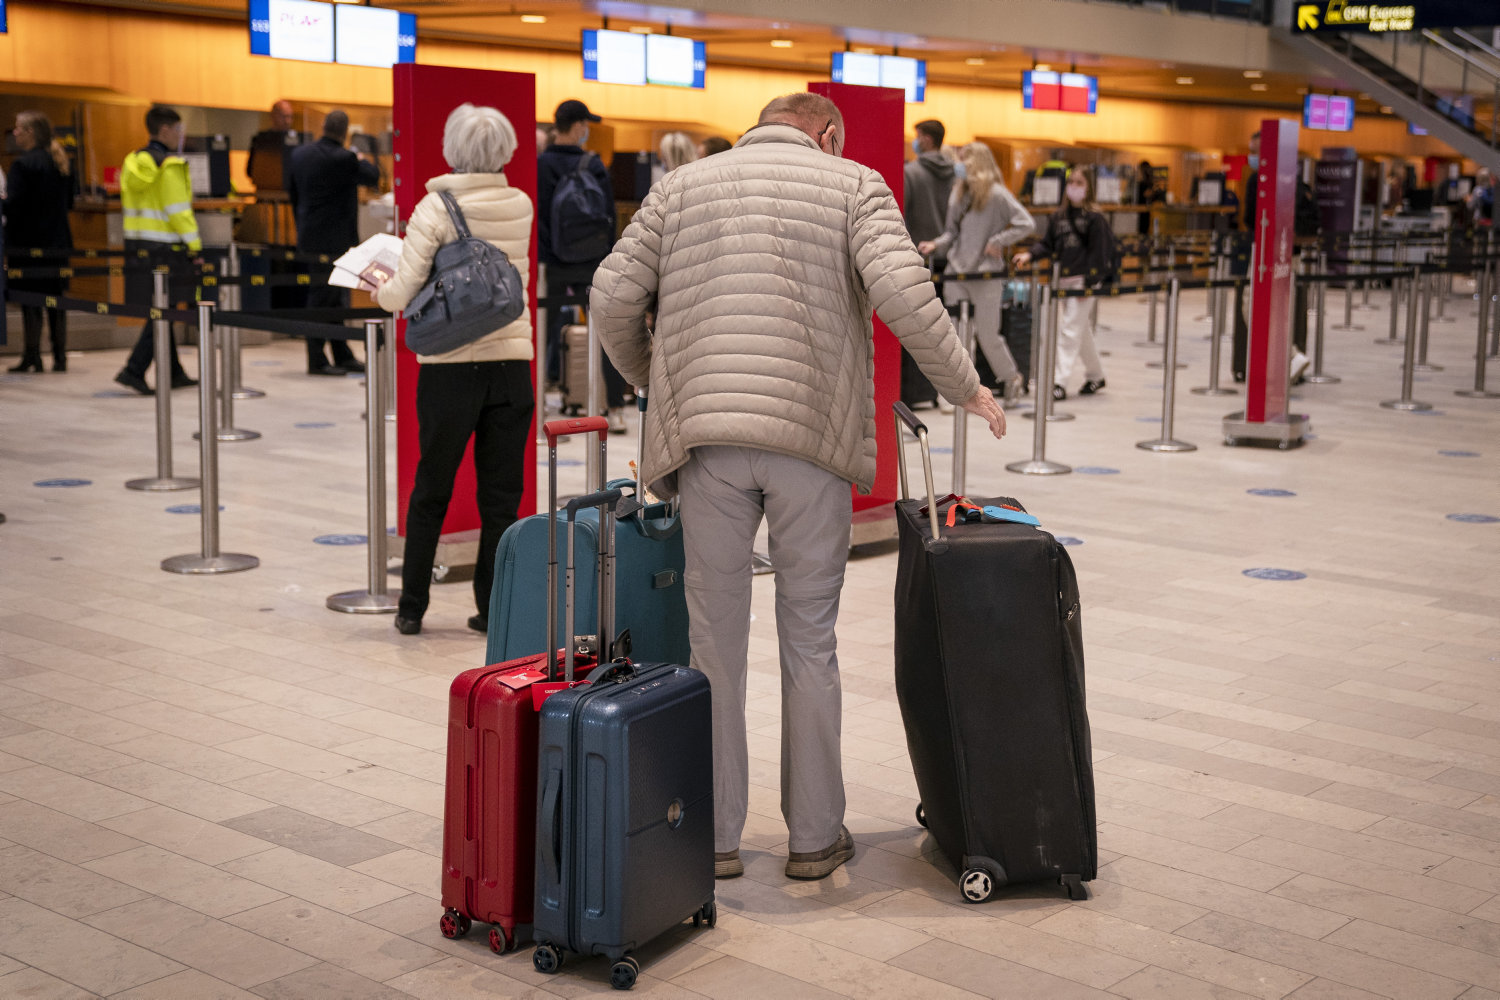 lastefolk i københavns lufthavn strejkede over vagtplaner